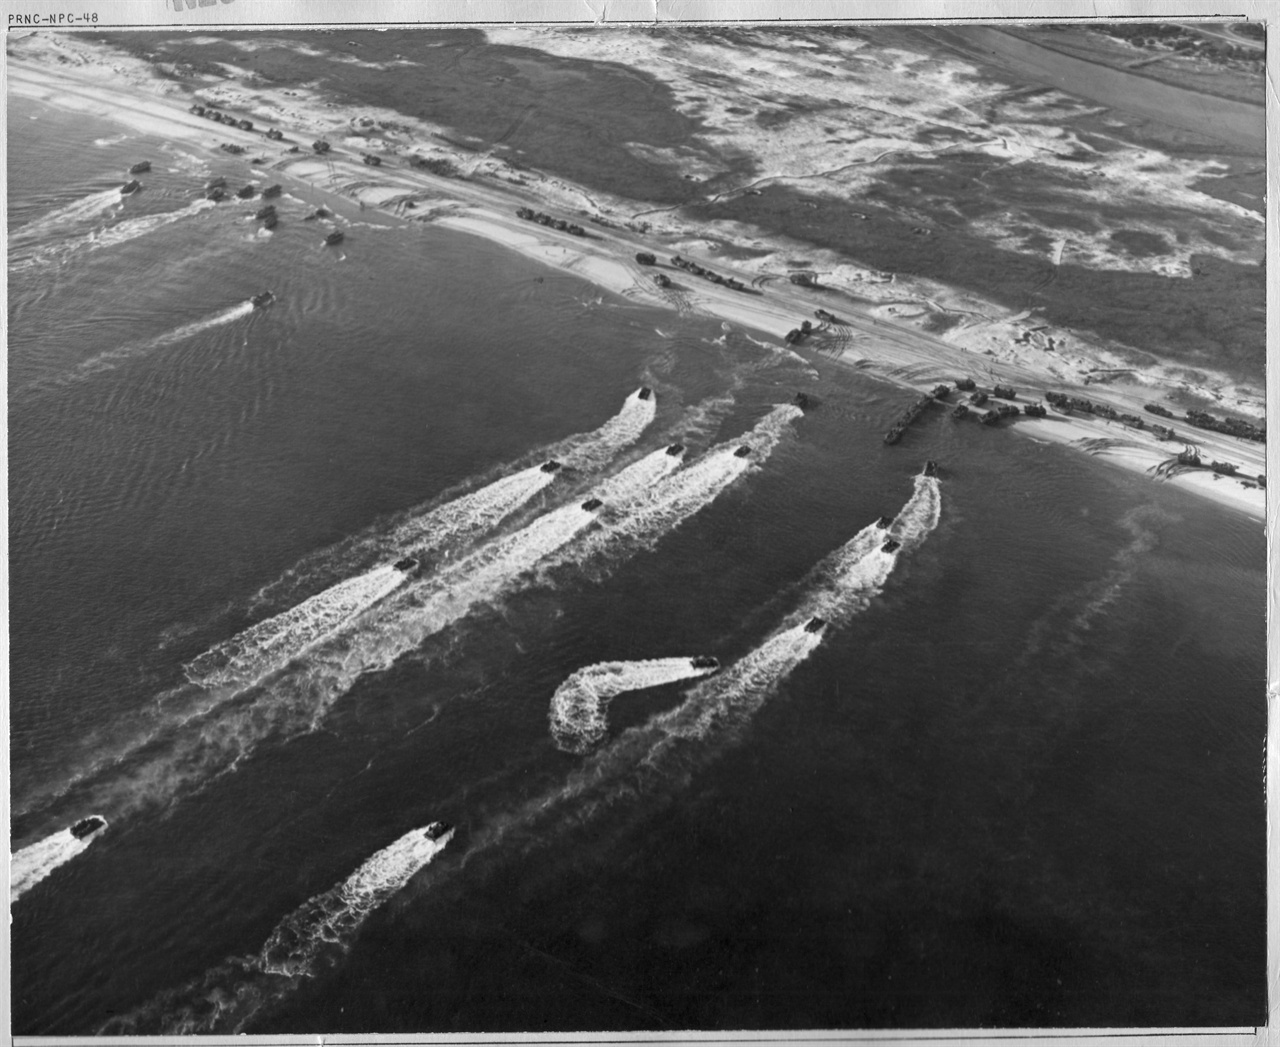 1950. 10. 26, 원산에 상륙하는 유엔군 함정들.